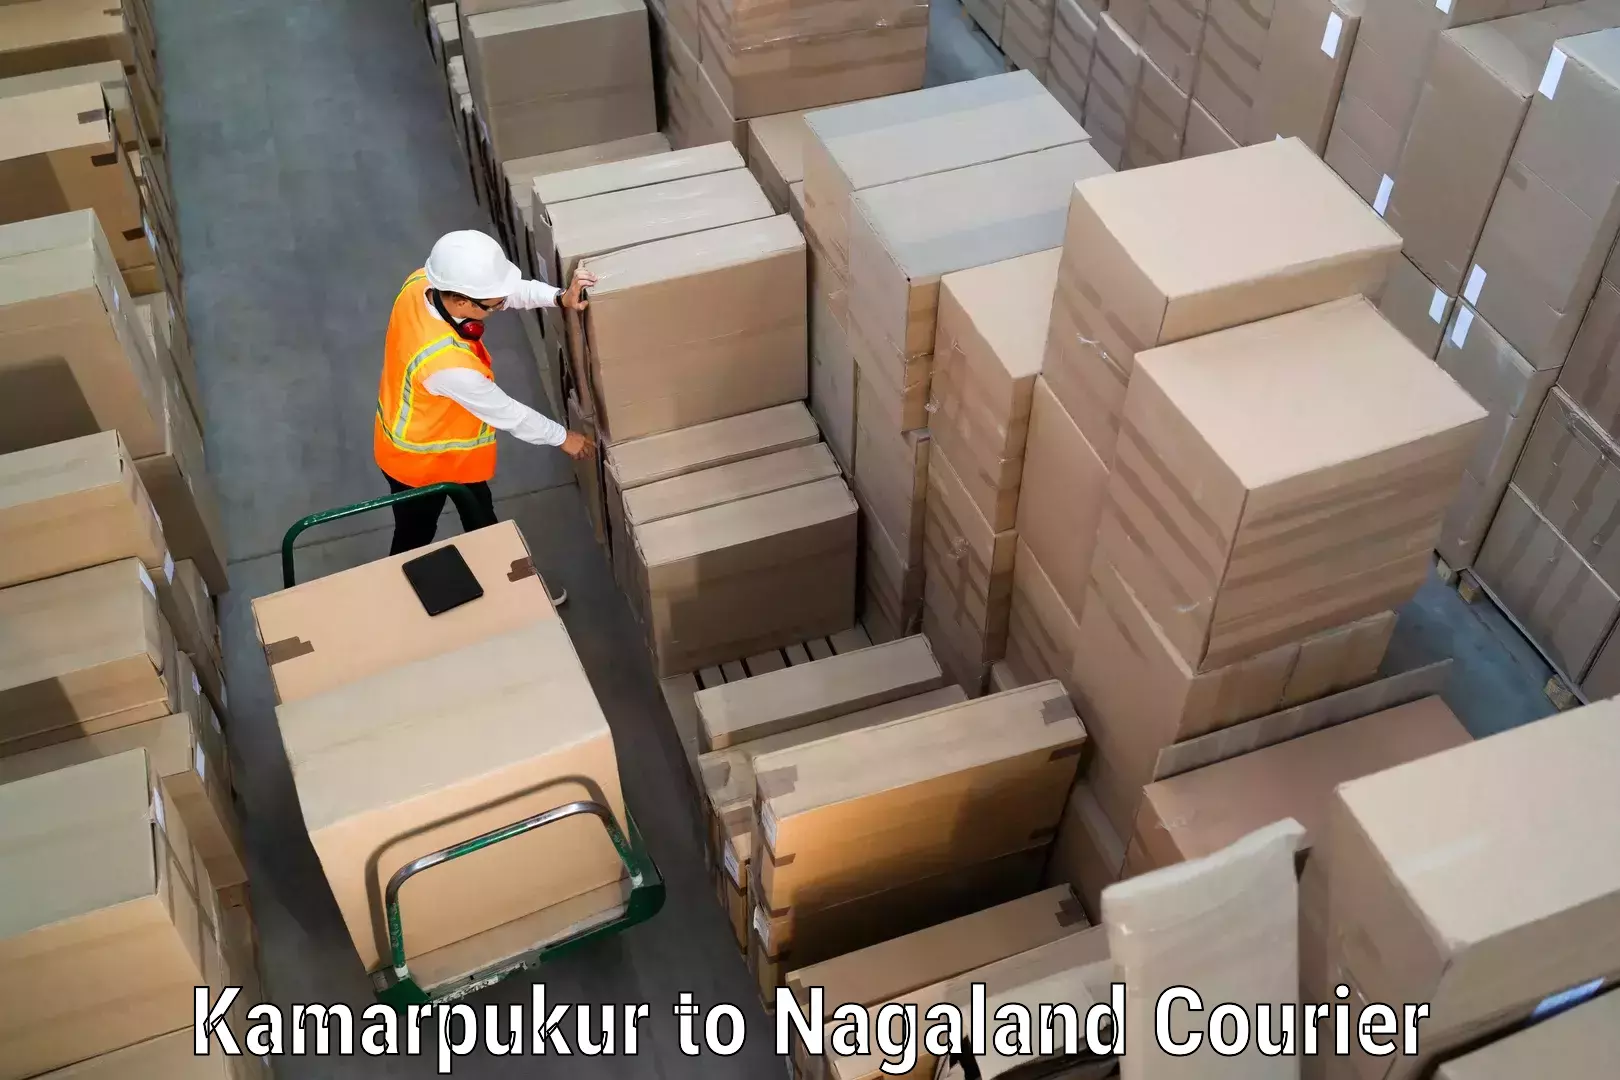 Efficient freight service Kamarpukur to Nagaland